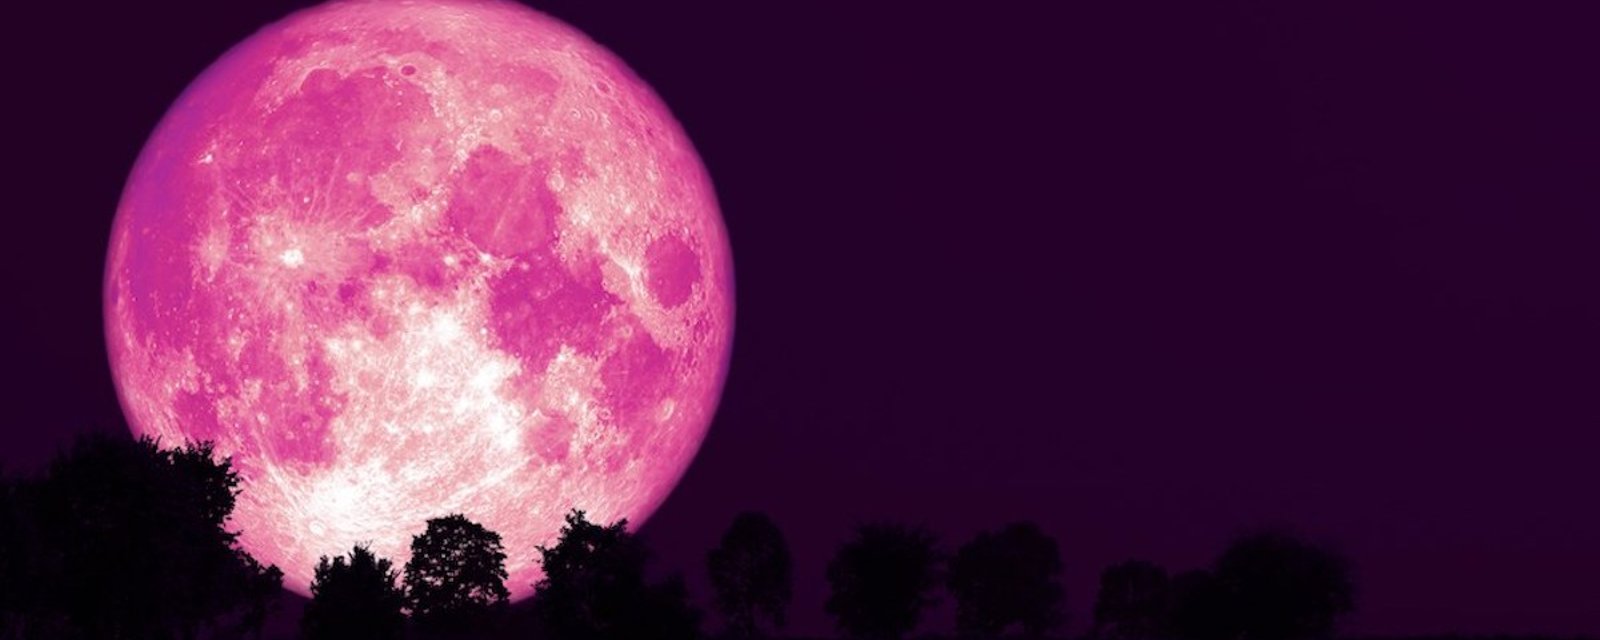 Dans la nuit du 26 au 27 avril, on pourra admirer une super lune rose